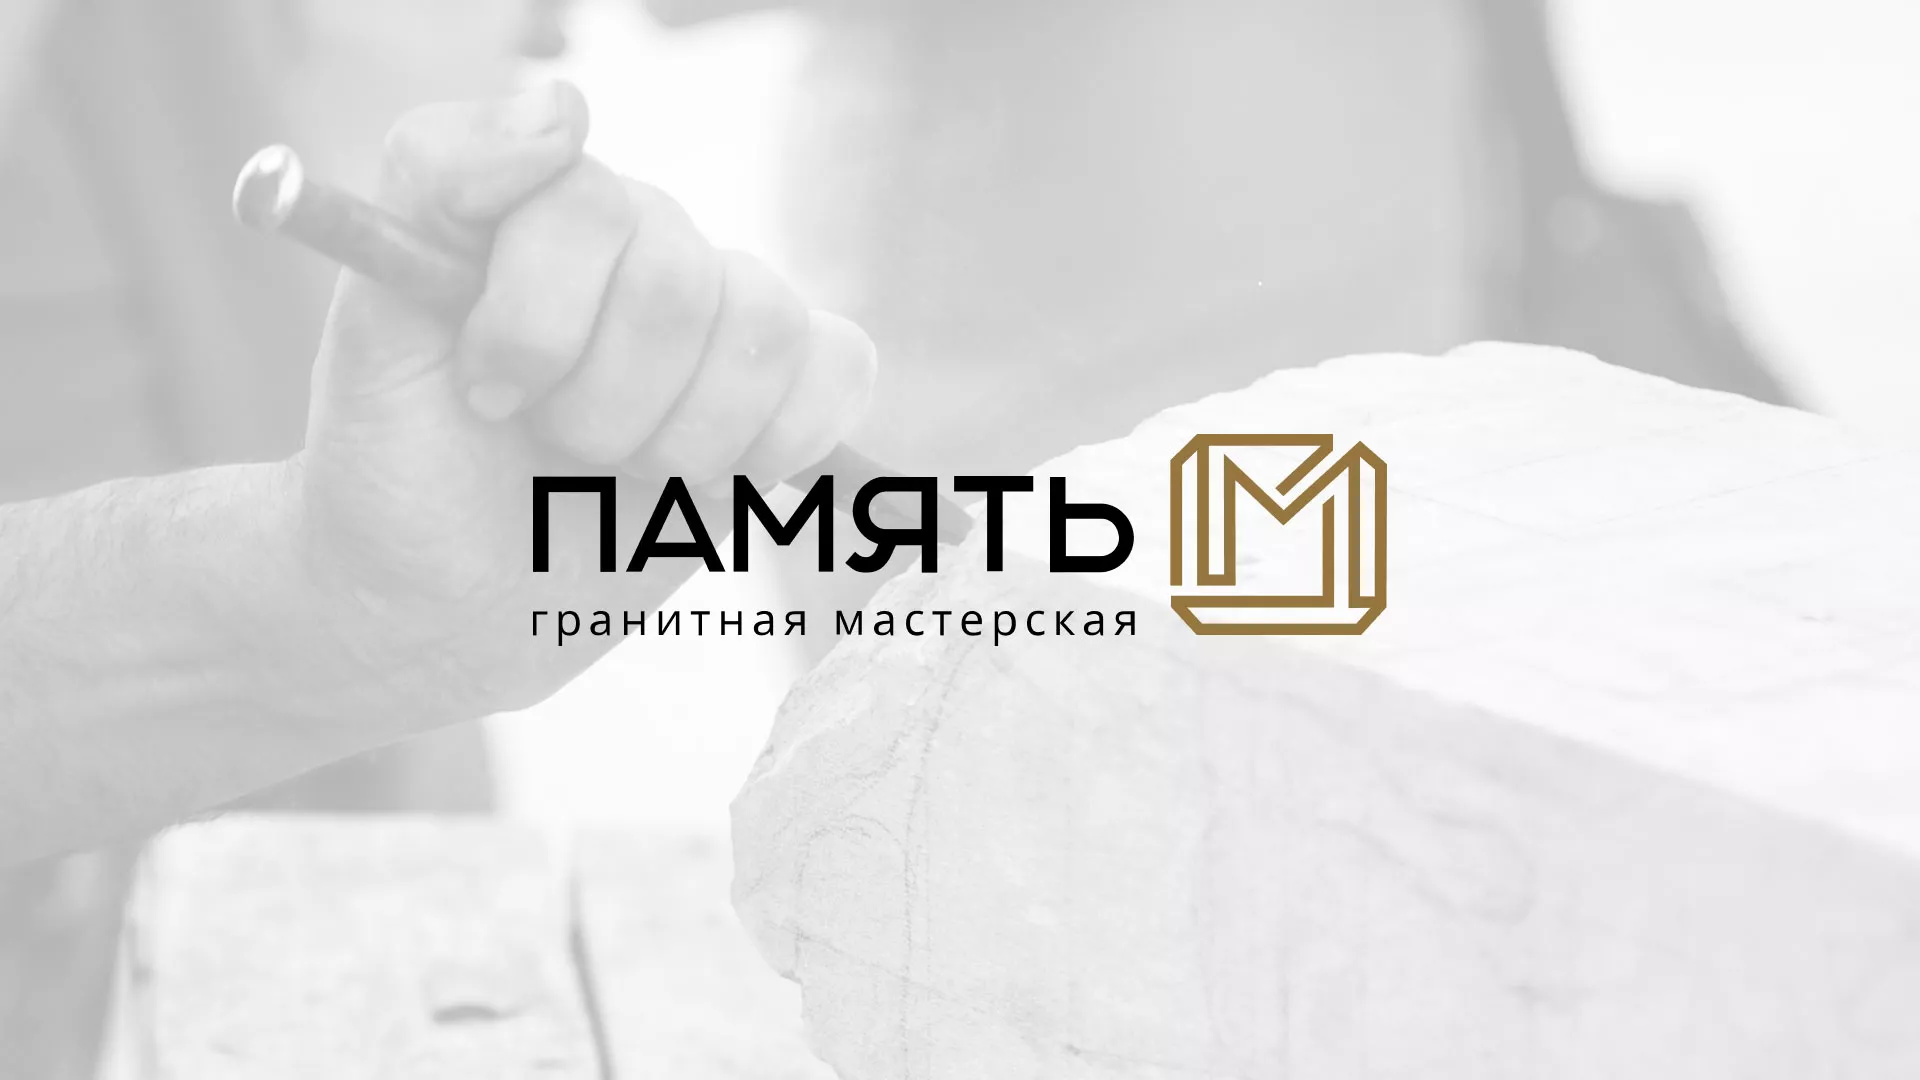 Разработка логотипа и сайта компании «Память-М» в Костомукше